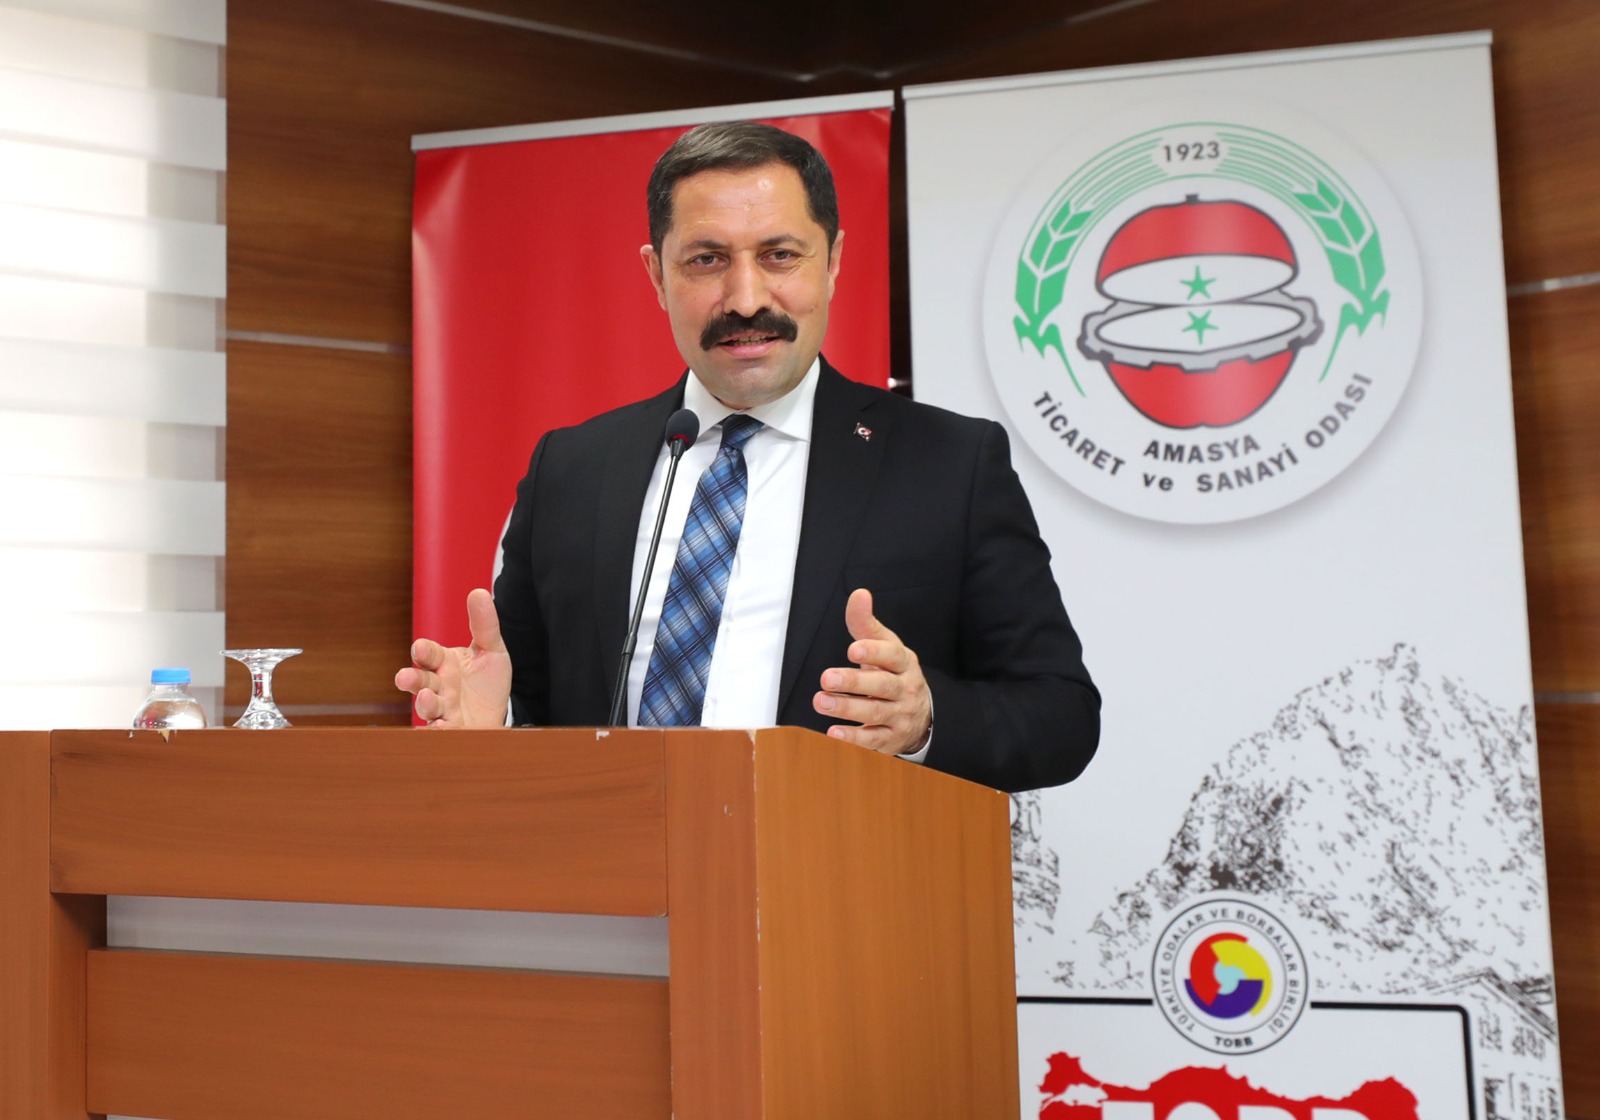 Amasya Valisi Mustafa MASATLI, Mesleki Eğitimi Tanıtma ve Yaygınlaştırma Projesi (METYAP) Amasya Tanıtım Toplantısı’na Katıldı